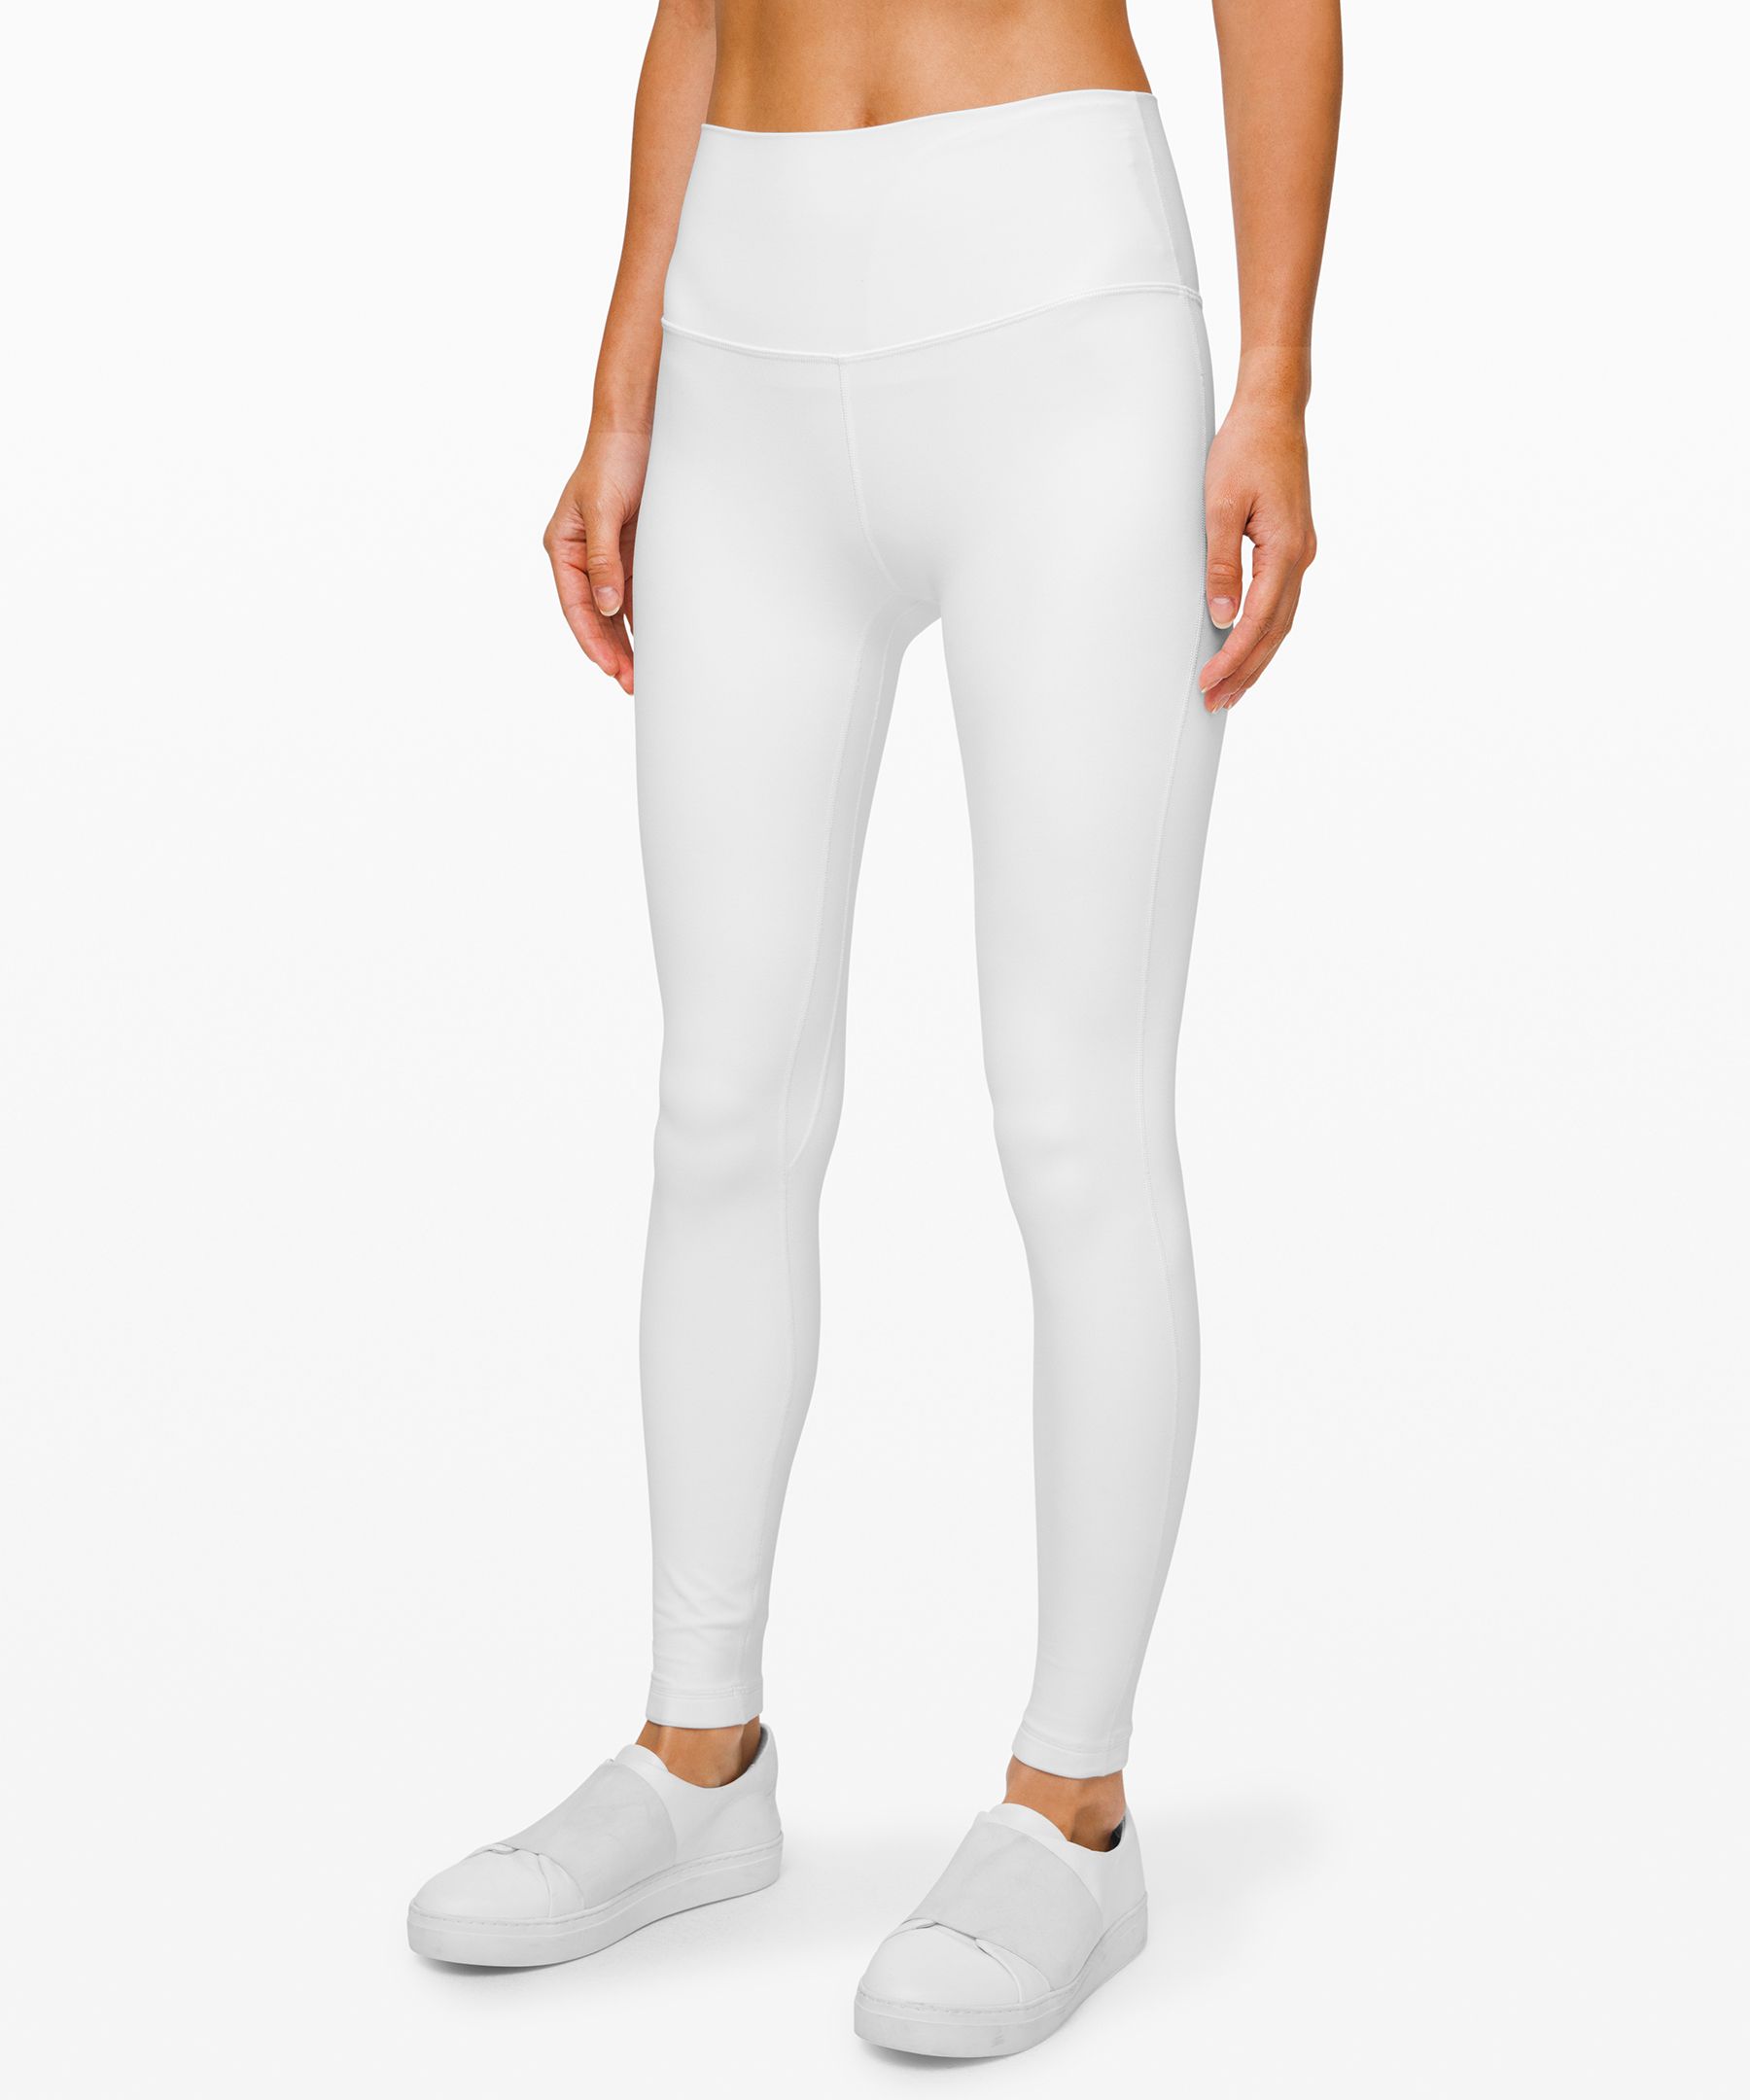 Lululemon Align™ High-rise Pants 28" In White